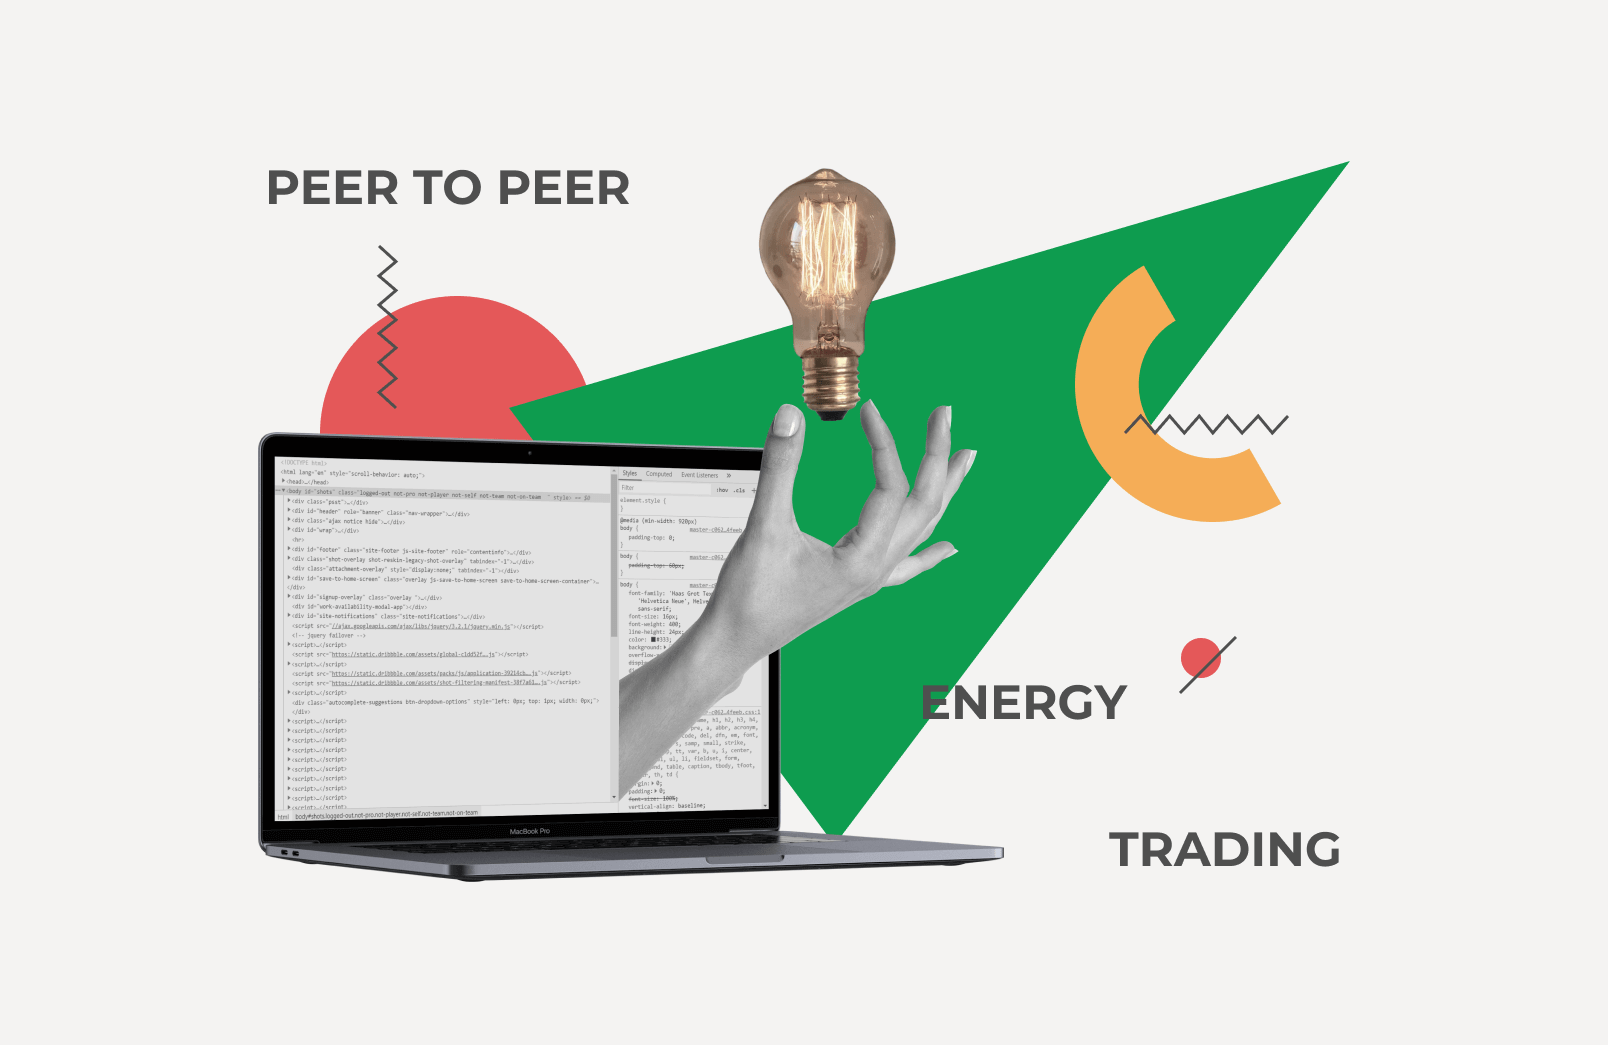 Peer to peer energy trading